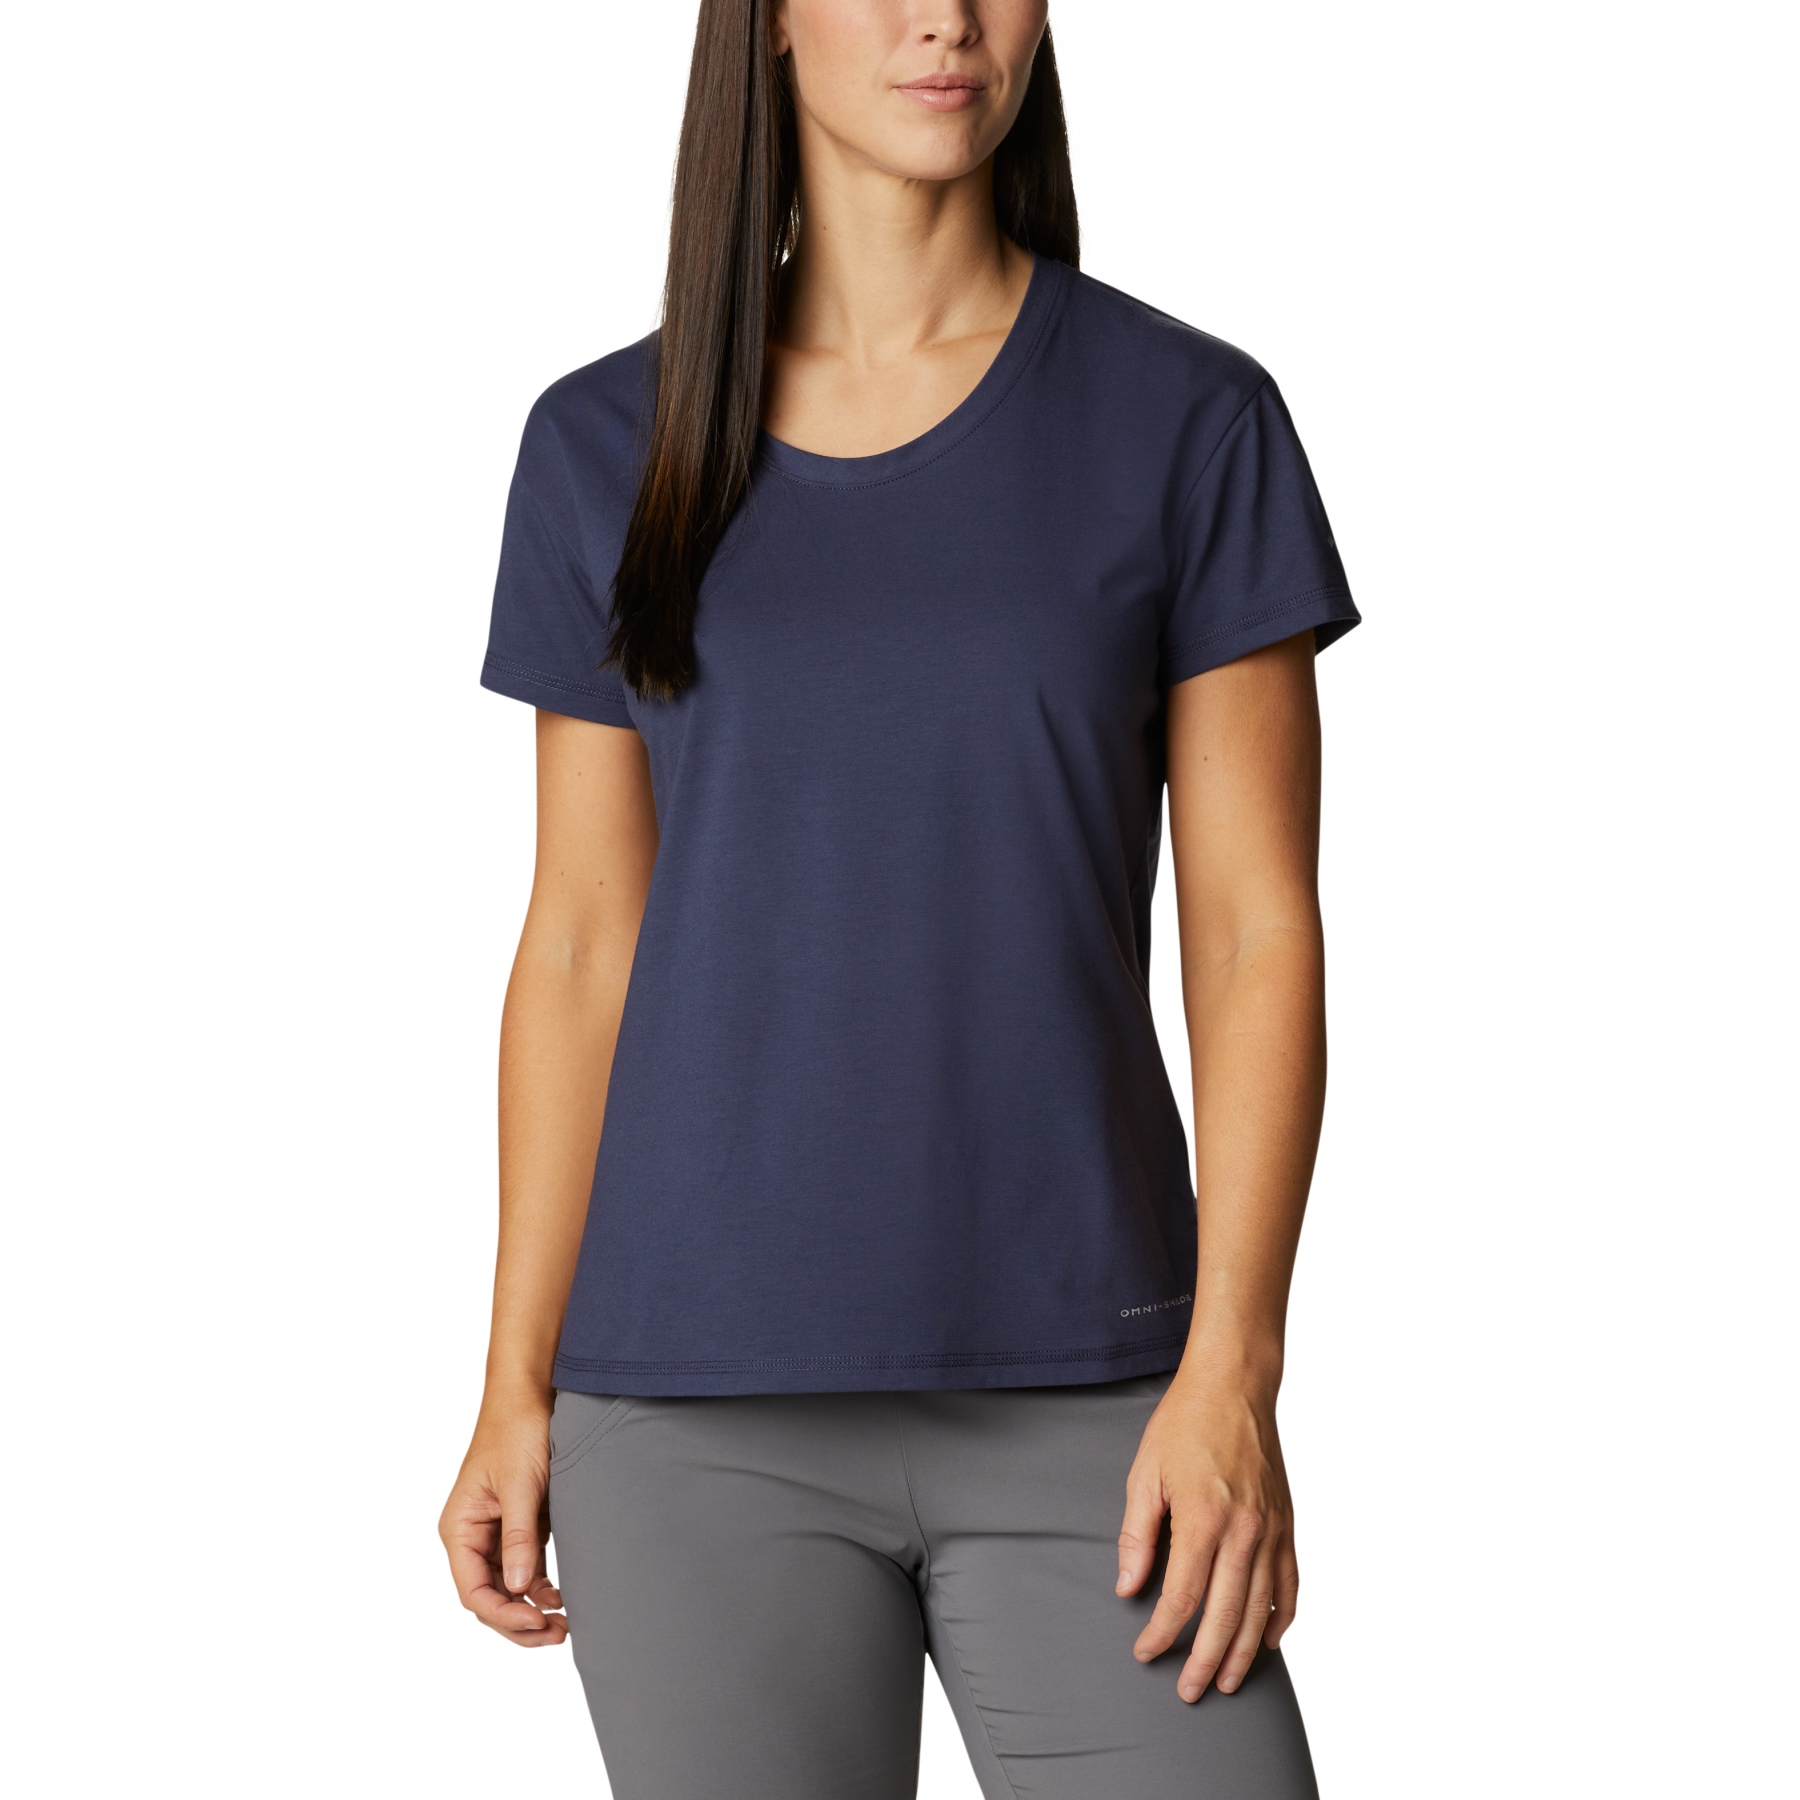 Produktbild von Columbia Sun Trek T-Shirt Damen - Nocturnal